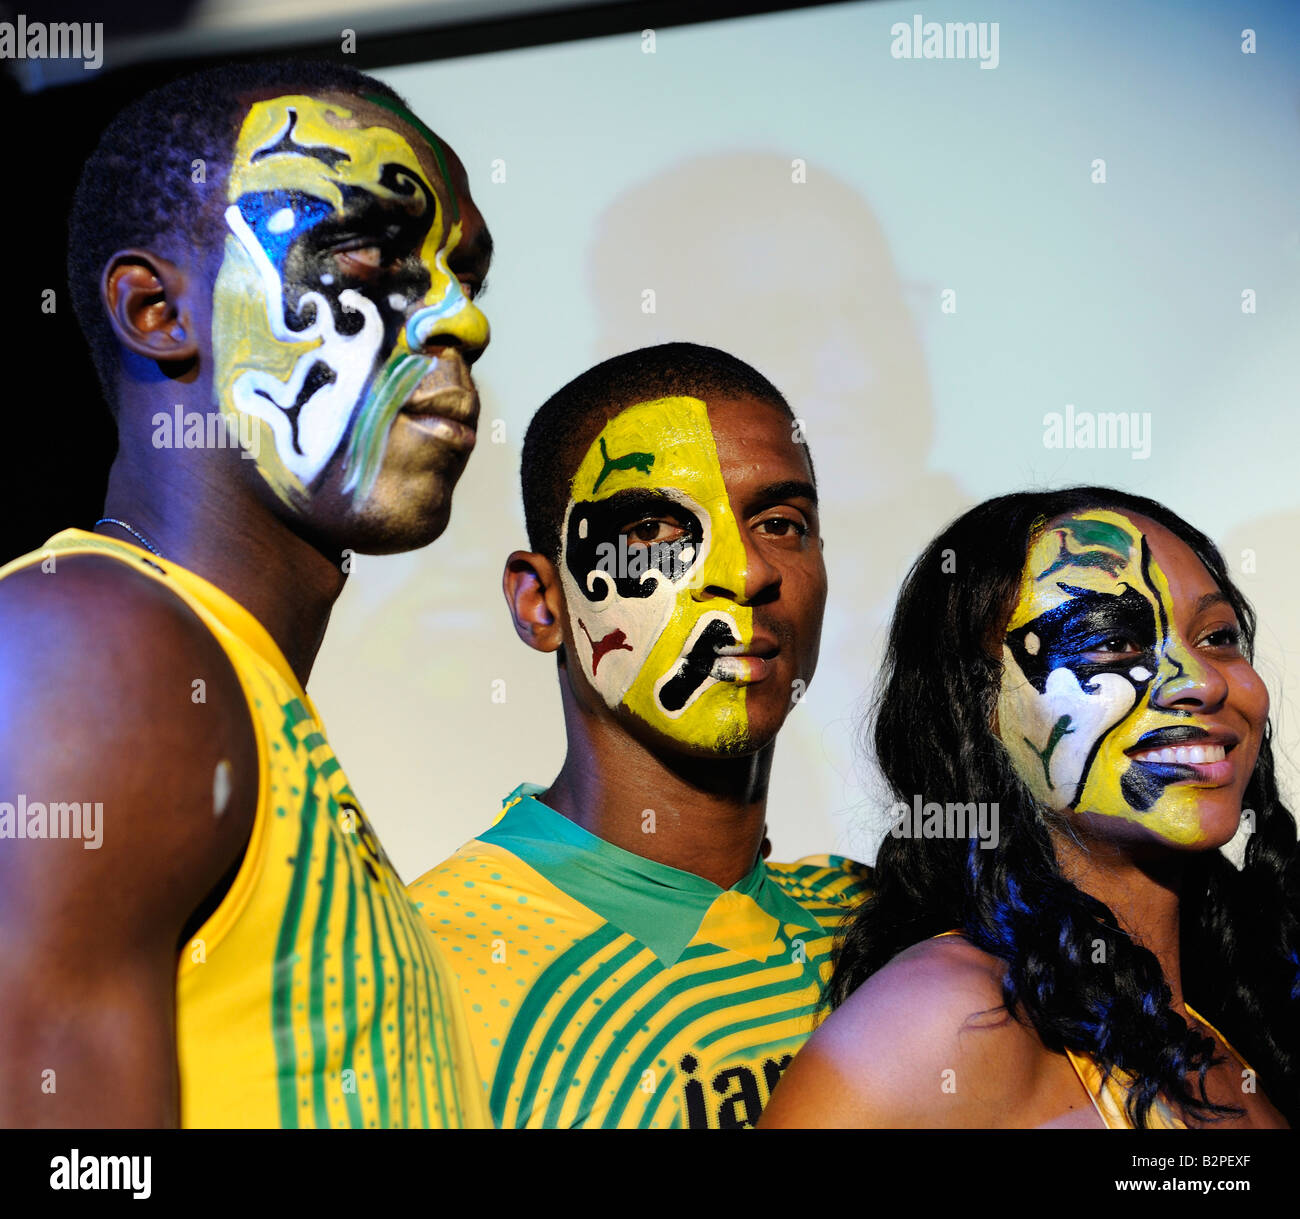 En Jamaïque, le détenteur du record du monde 100m Usain Bolt(à gauche) et deux autres athlètes de la Jamaïque pour Jeux Olympiques de 2008 à Beijing. 05-Aug-2008 Banque D'Images